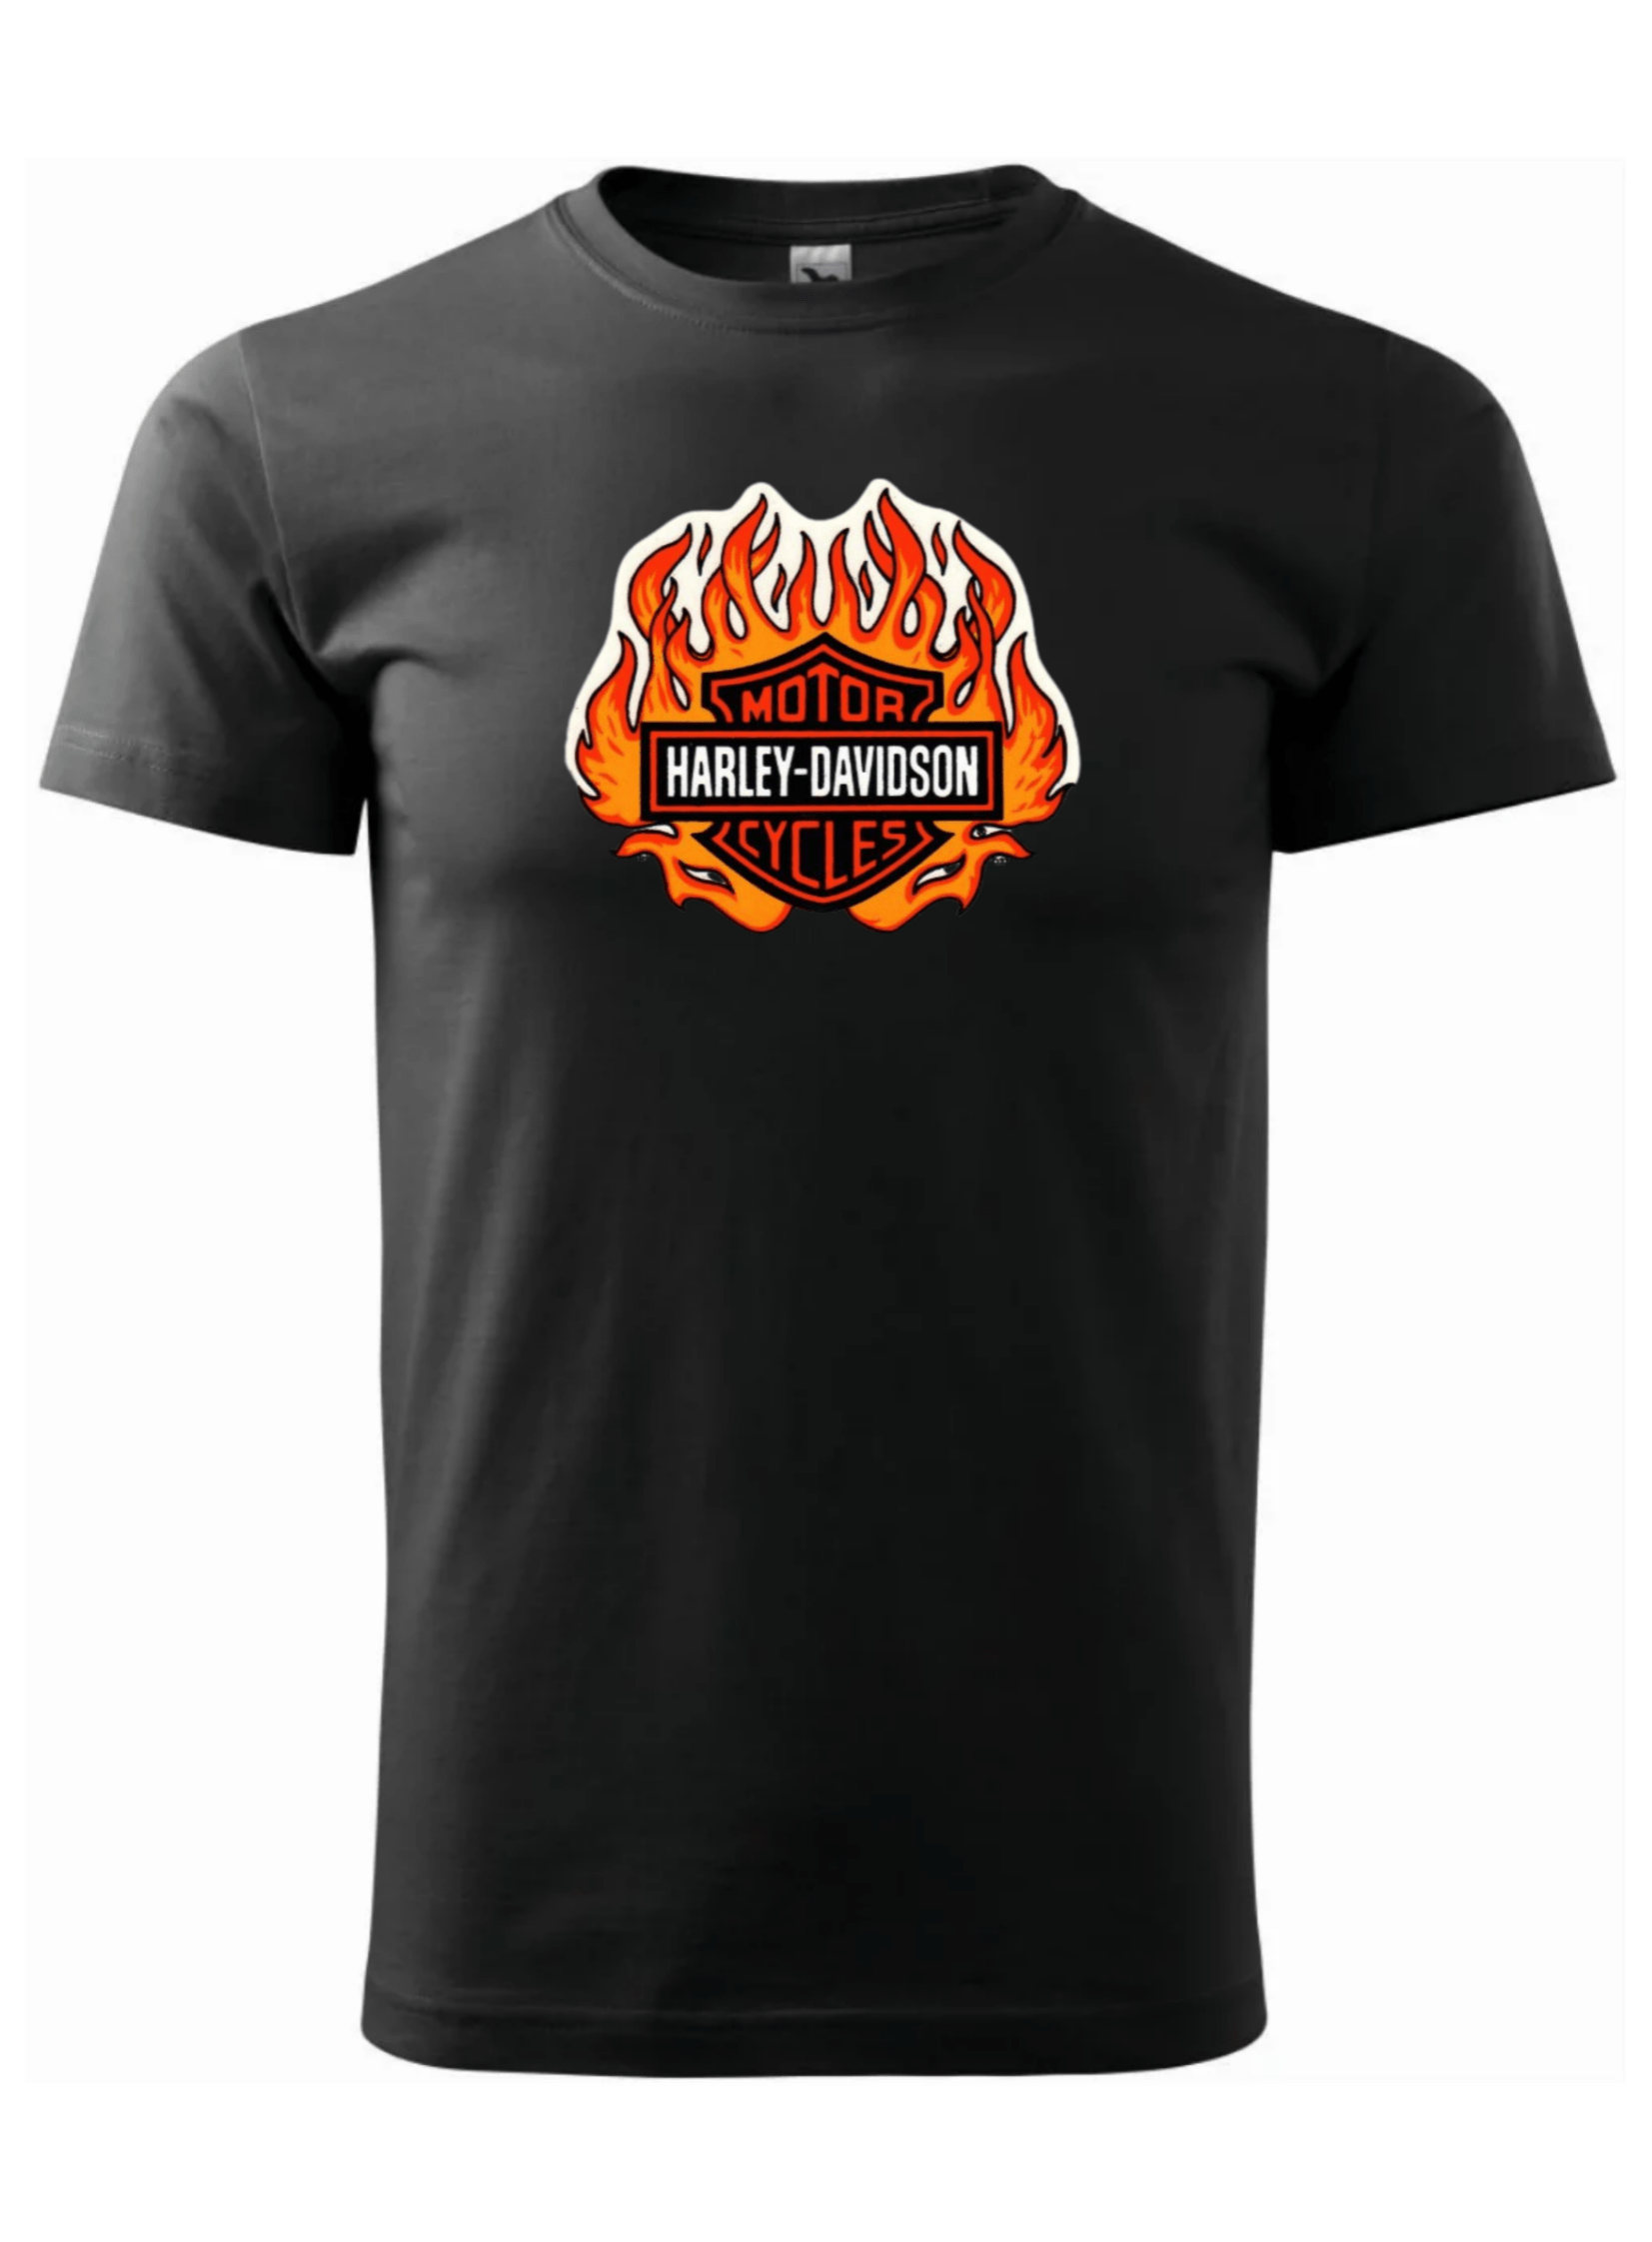 Pánské tričko s potiskem značky Harley Davidson 26